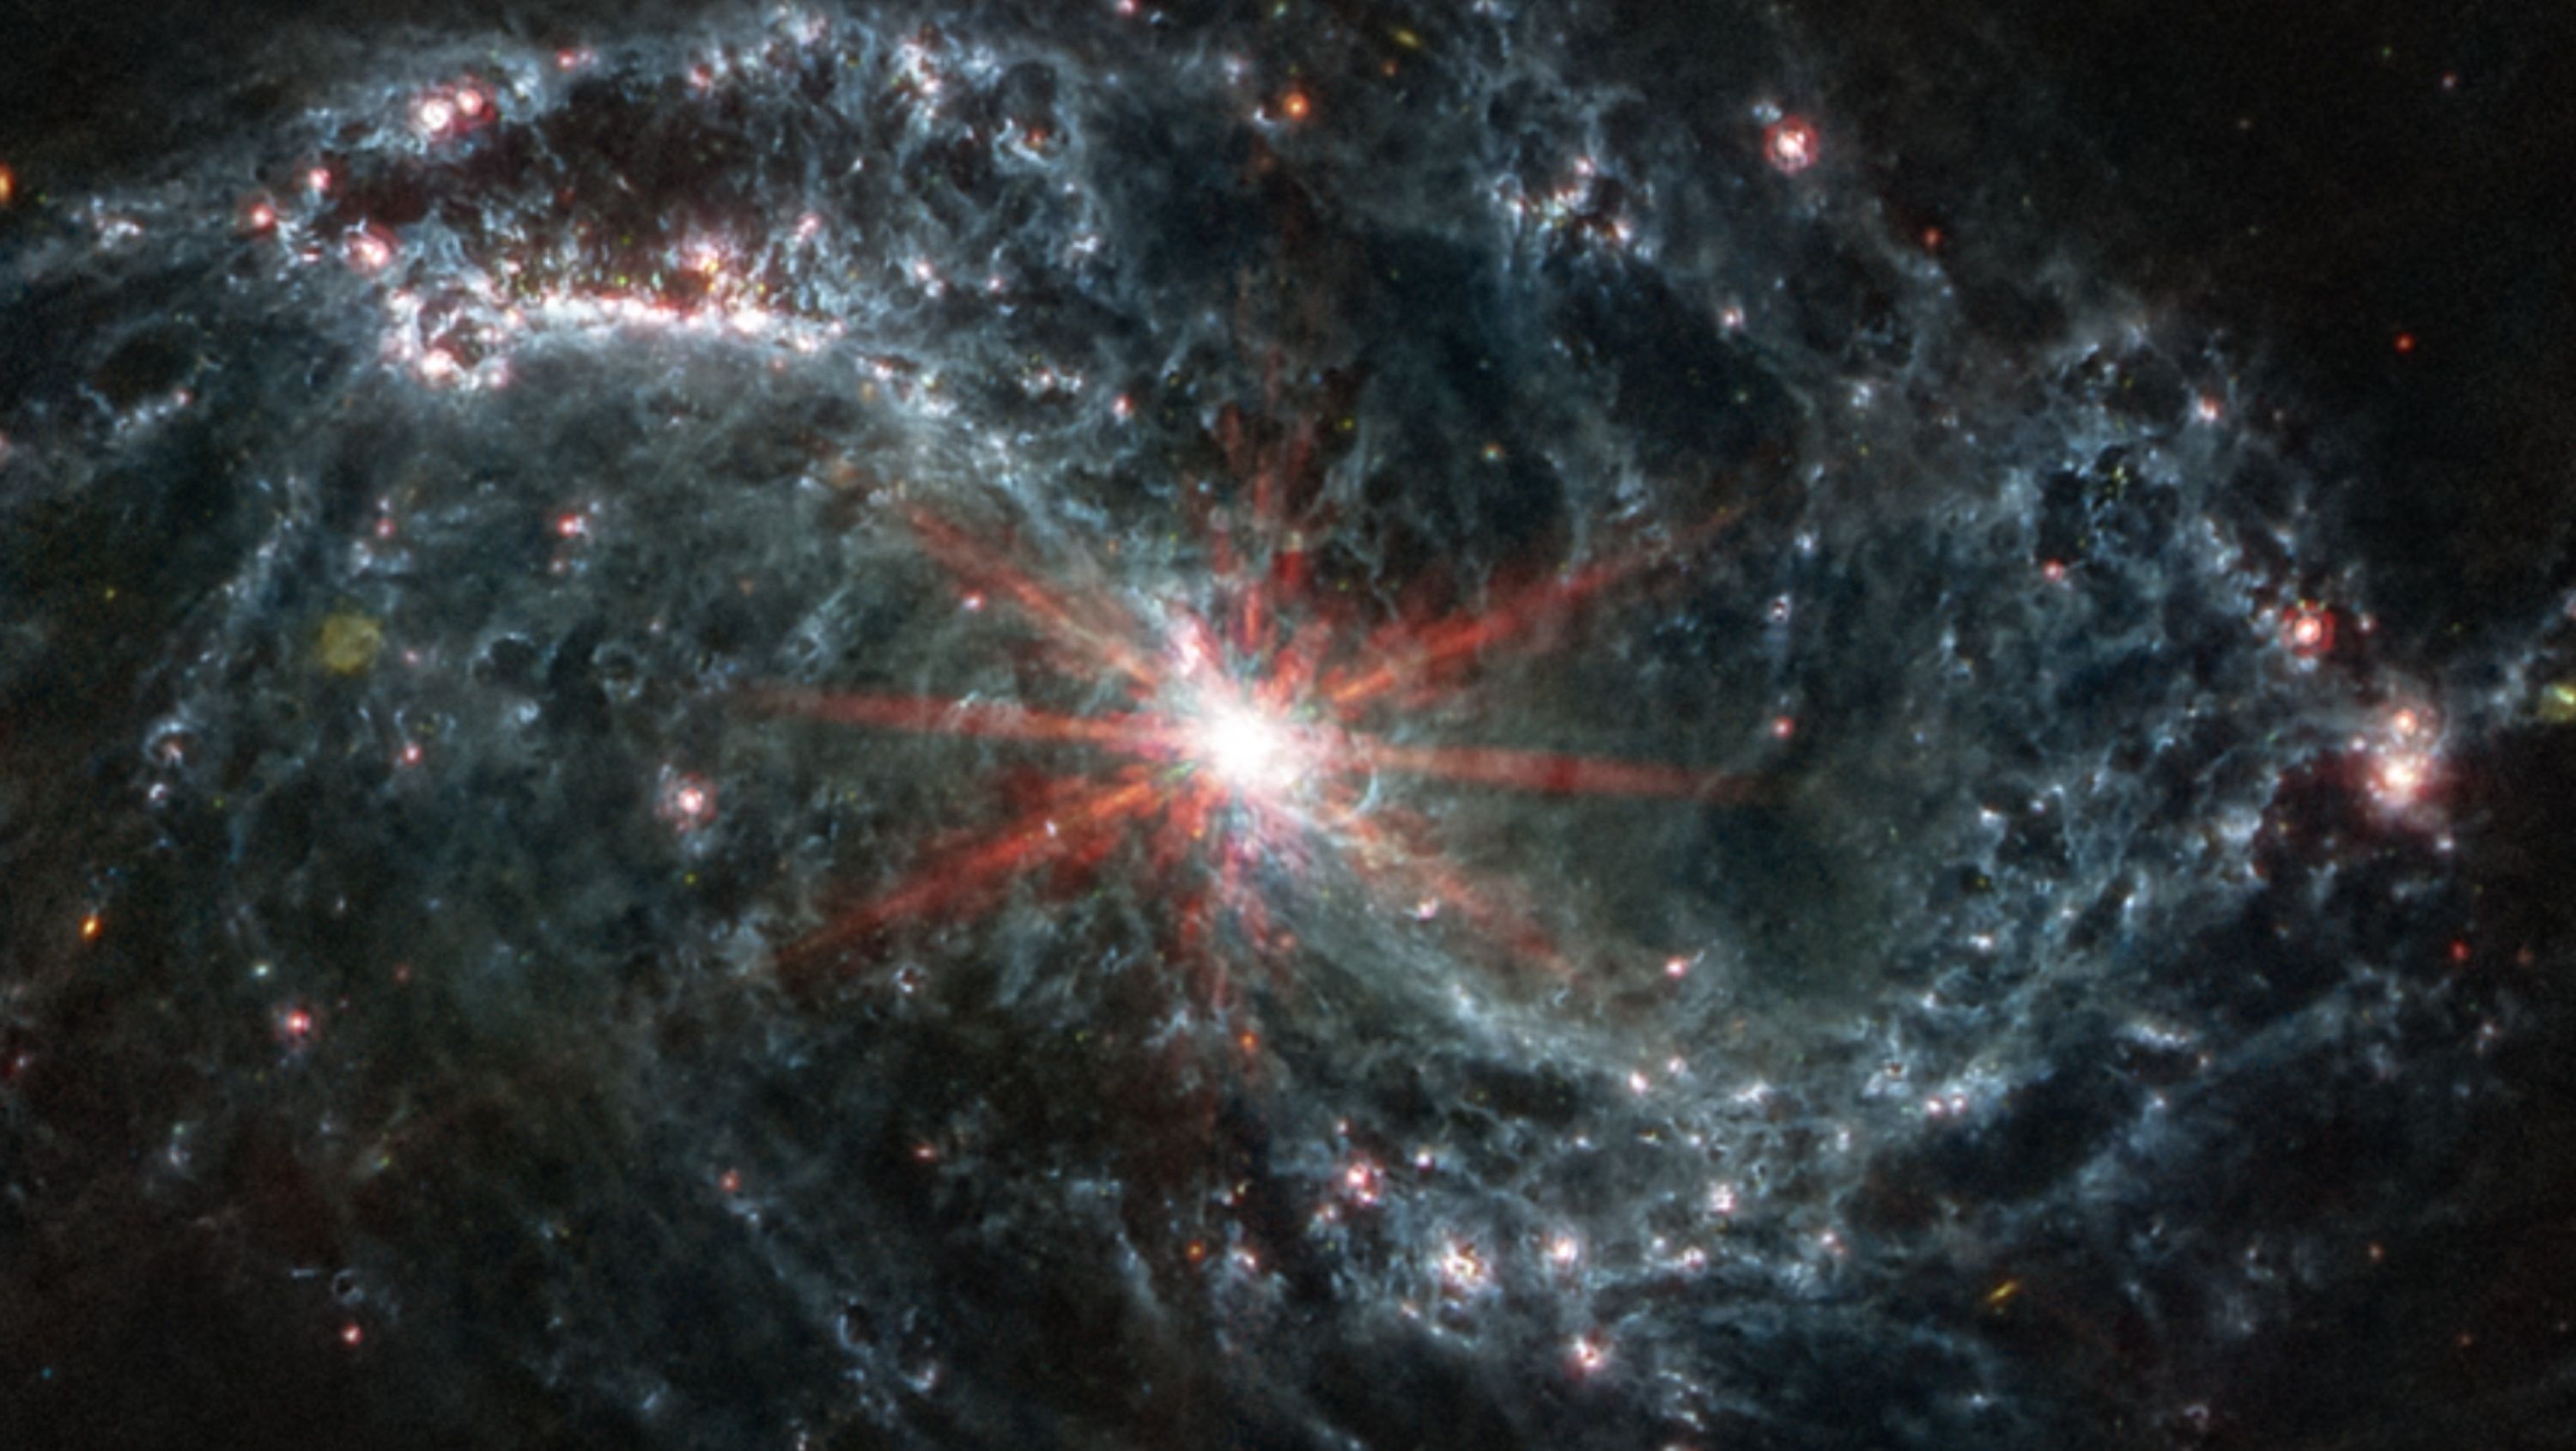 Captan la primera imagen de una "partícula fantasma" de la Vía Láctea